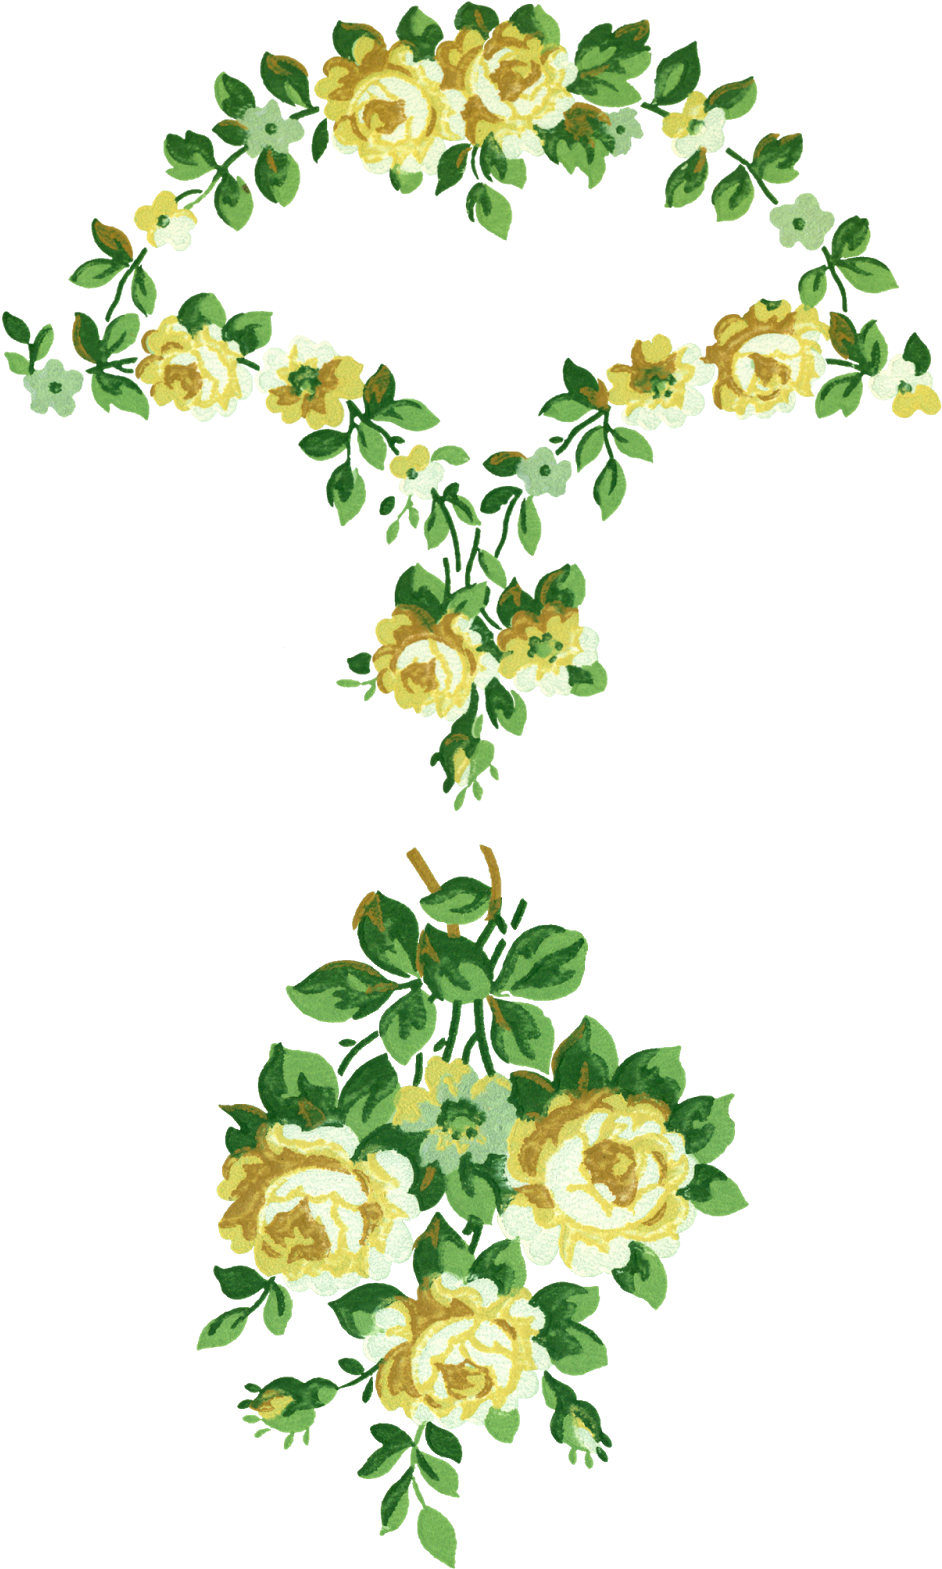 Rose Flower Designs Clip Art Download - Png Download (1237x1600), Png Download